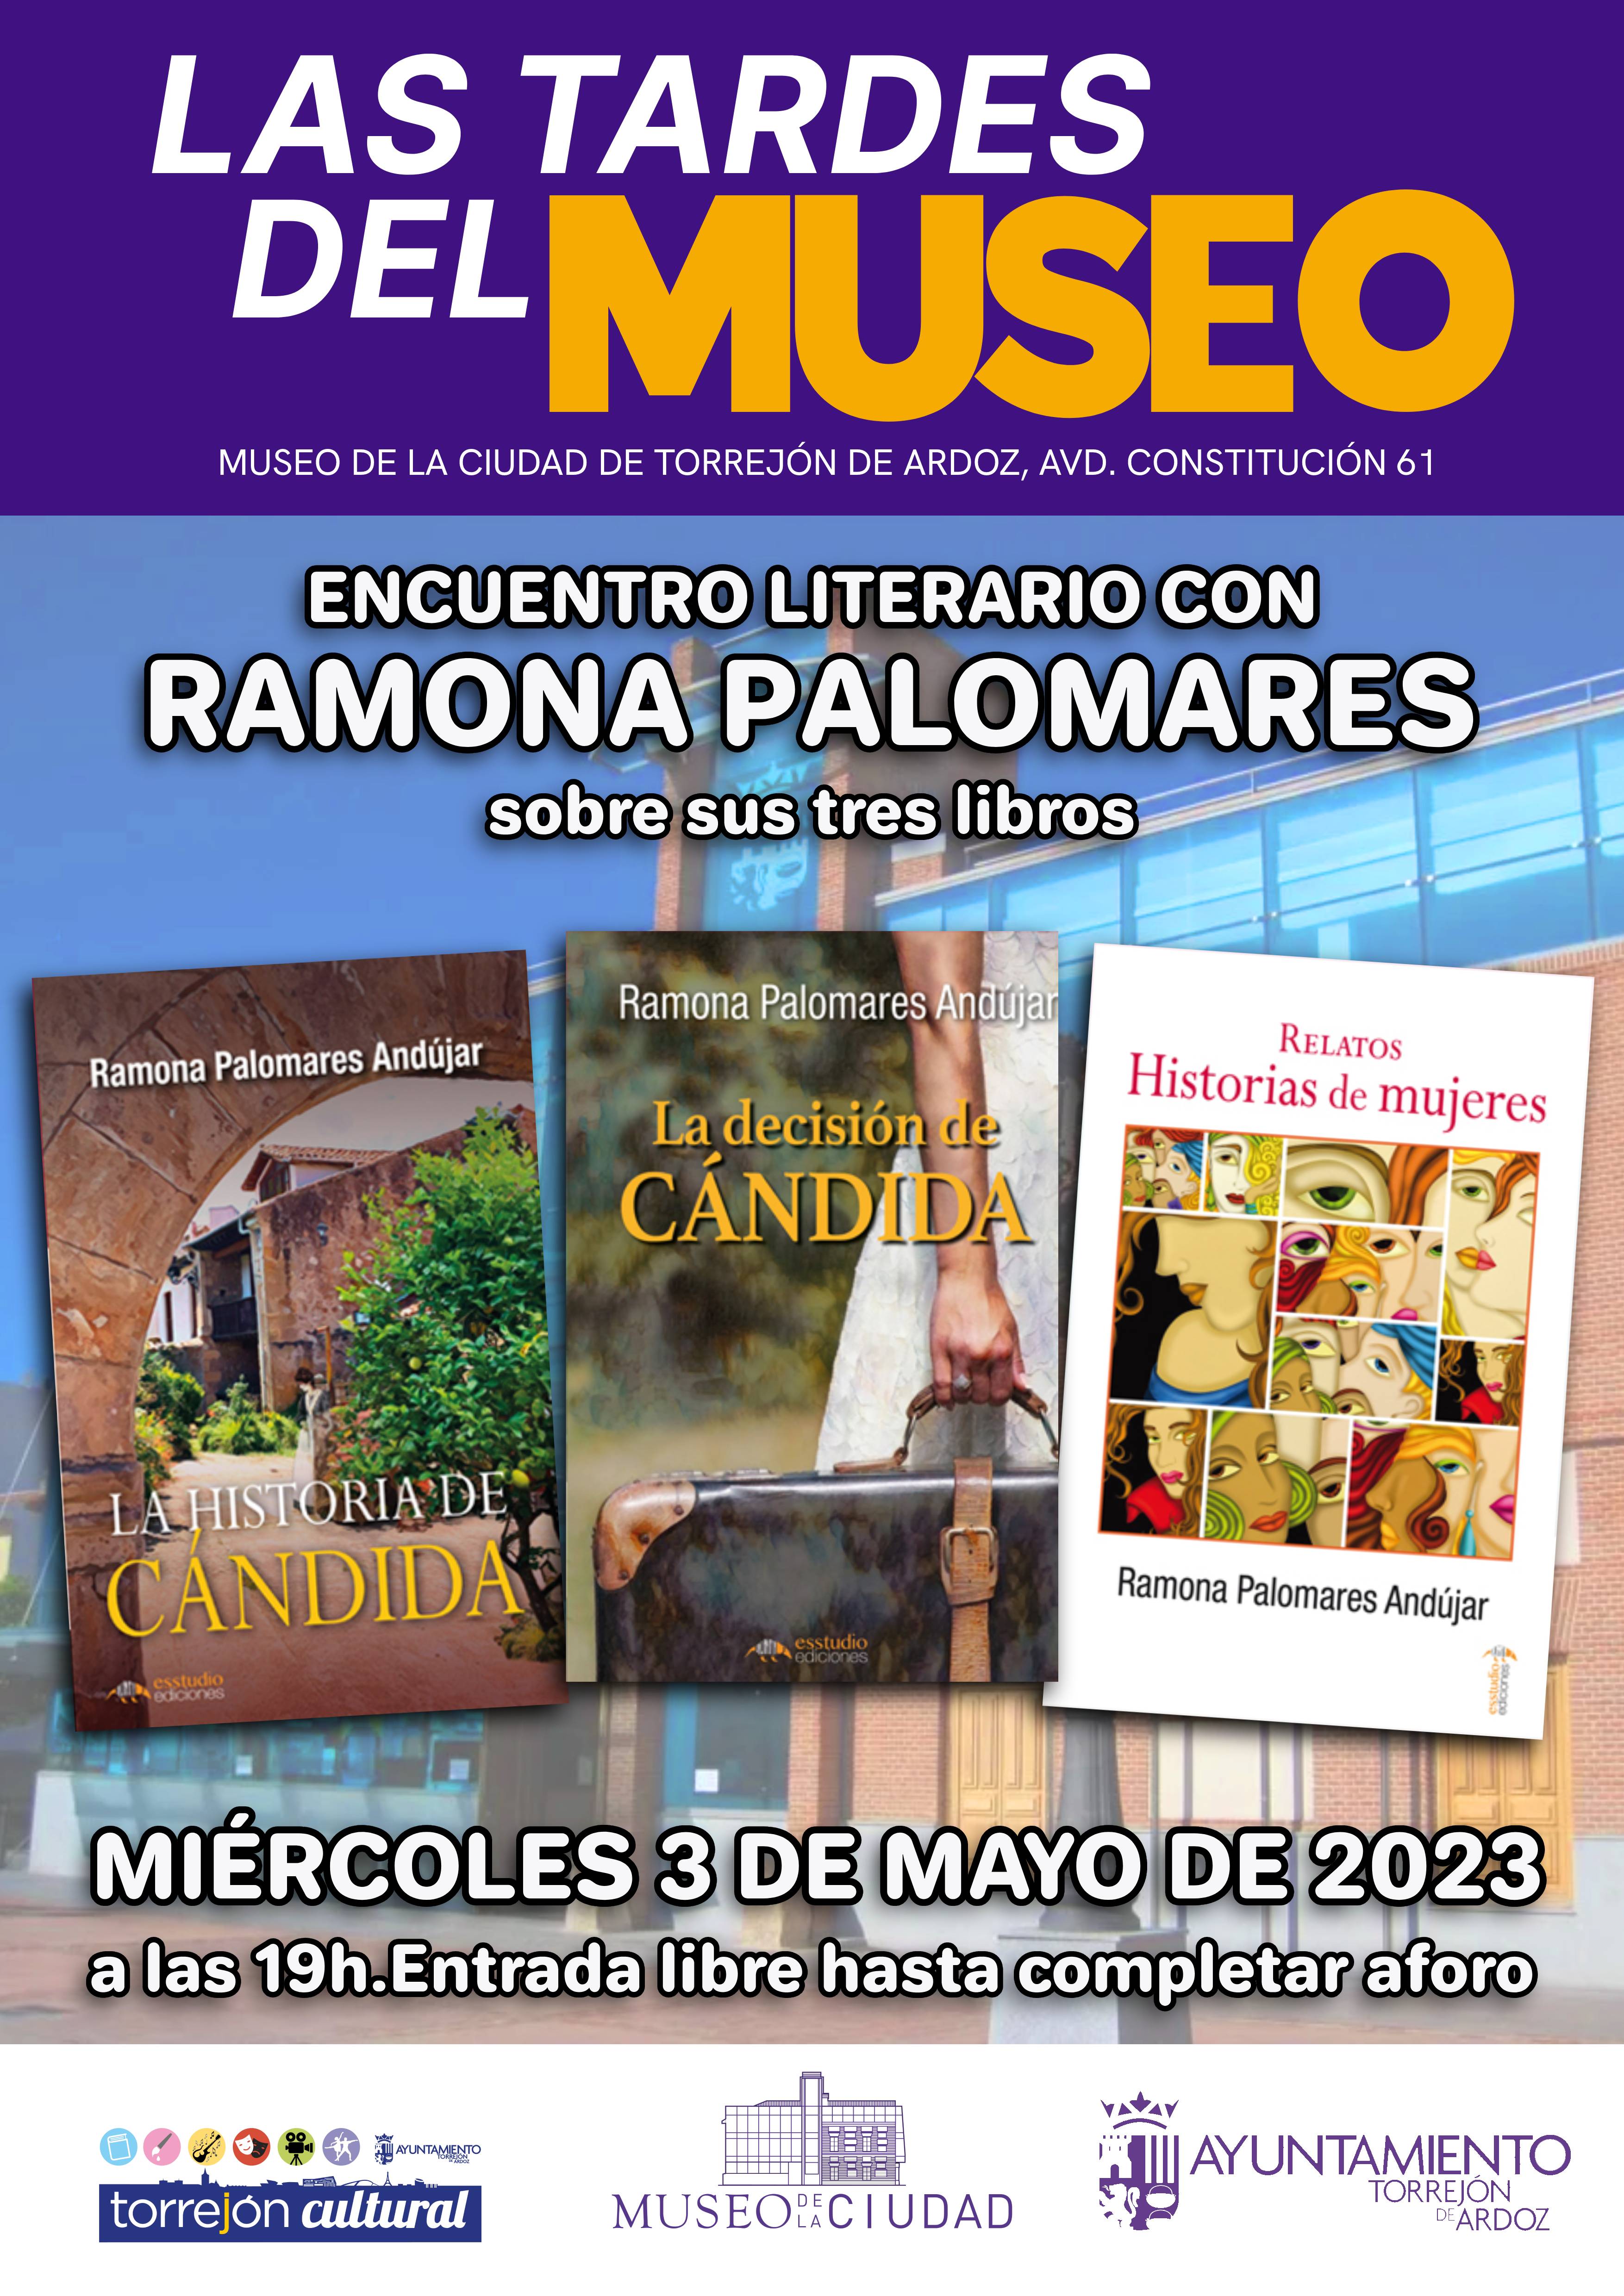 Las Tardes del Museo - Encuentro literario con Ramona Palomares